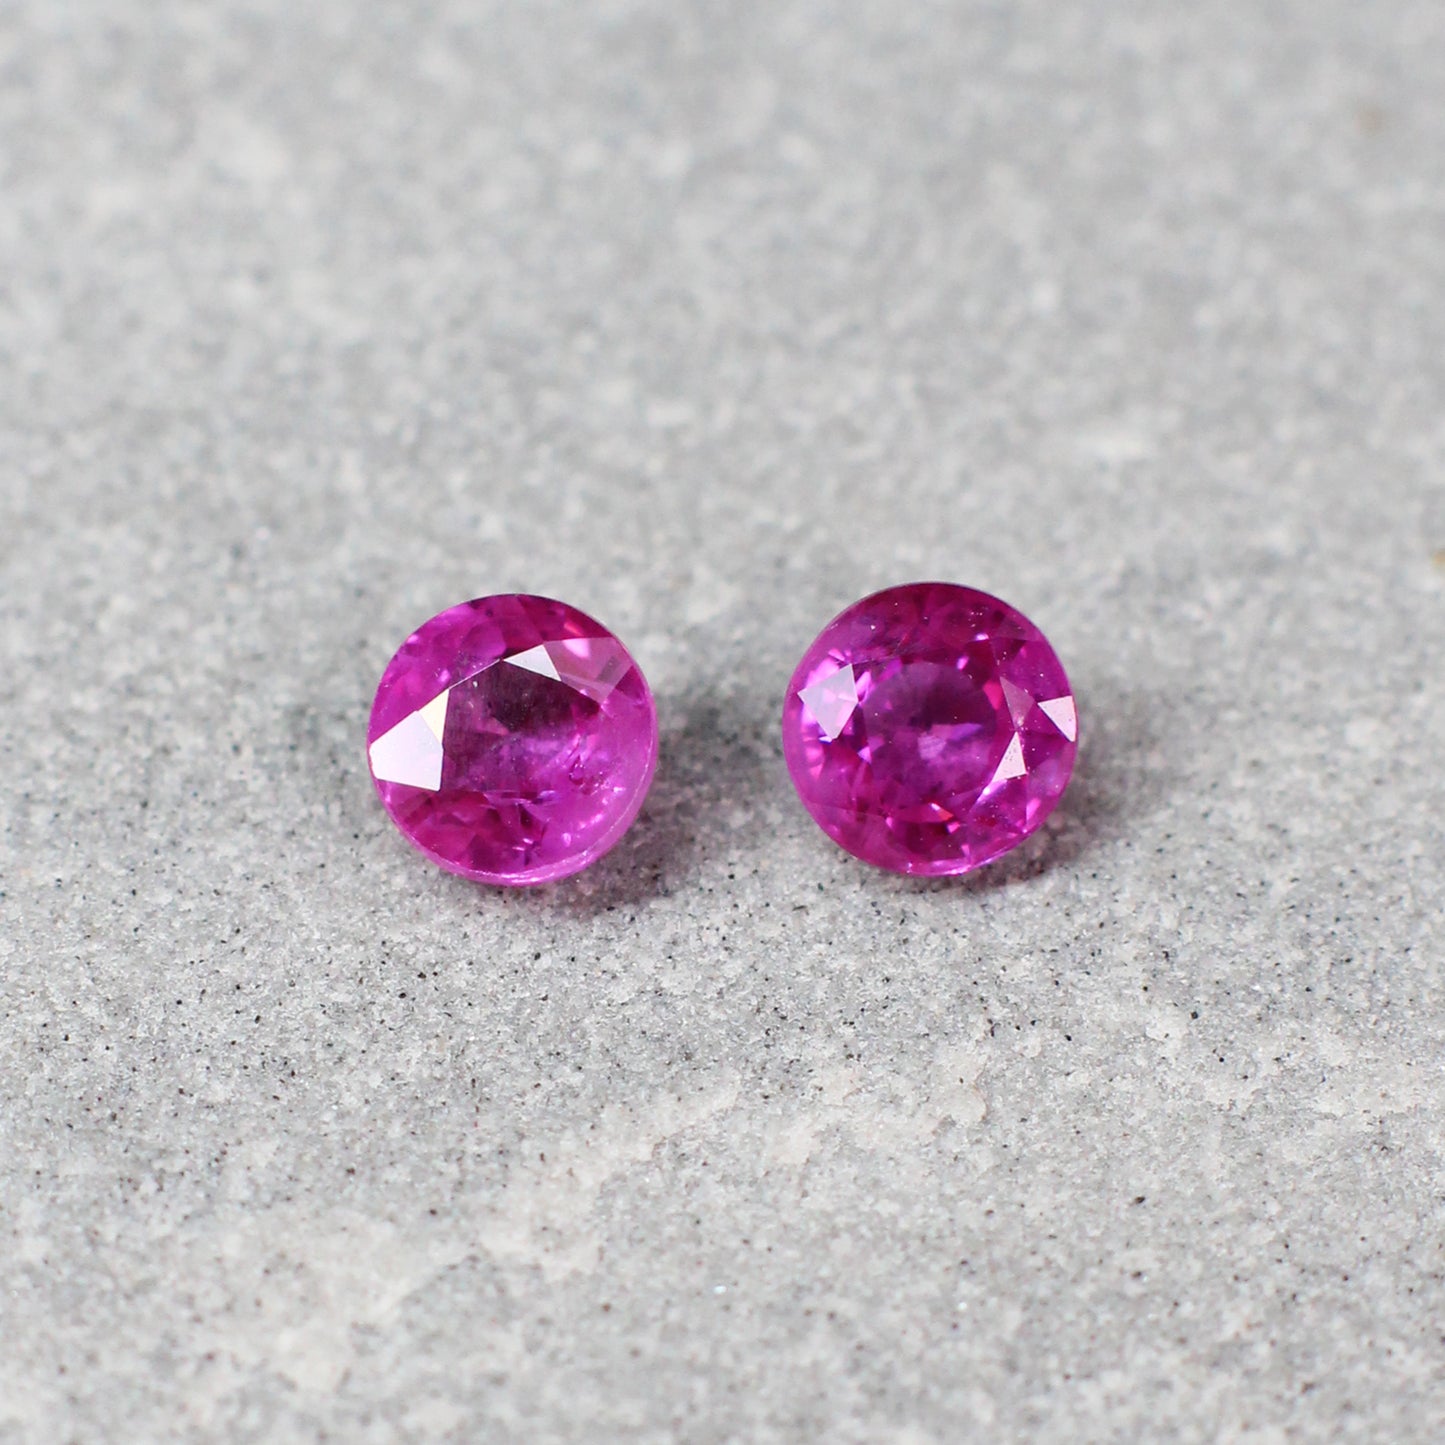 0.78ct Purplish Pink, Round Sapphire Pair, Heated, Vietnam - 4.06 - 4.13 x 2.4mm